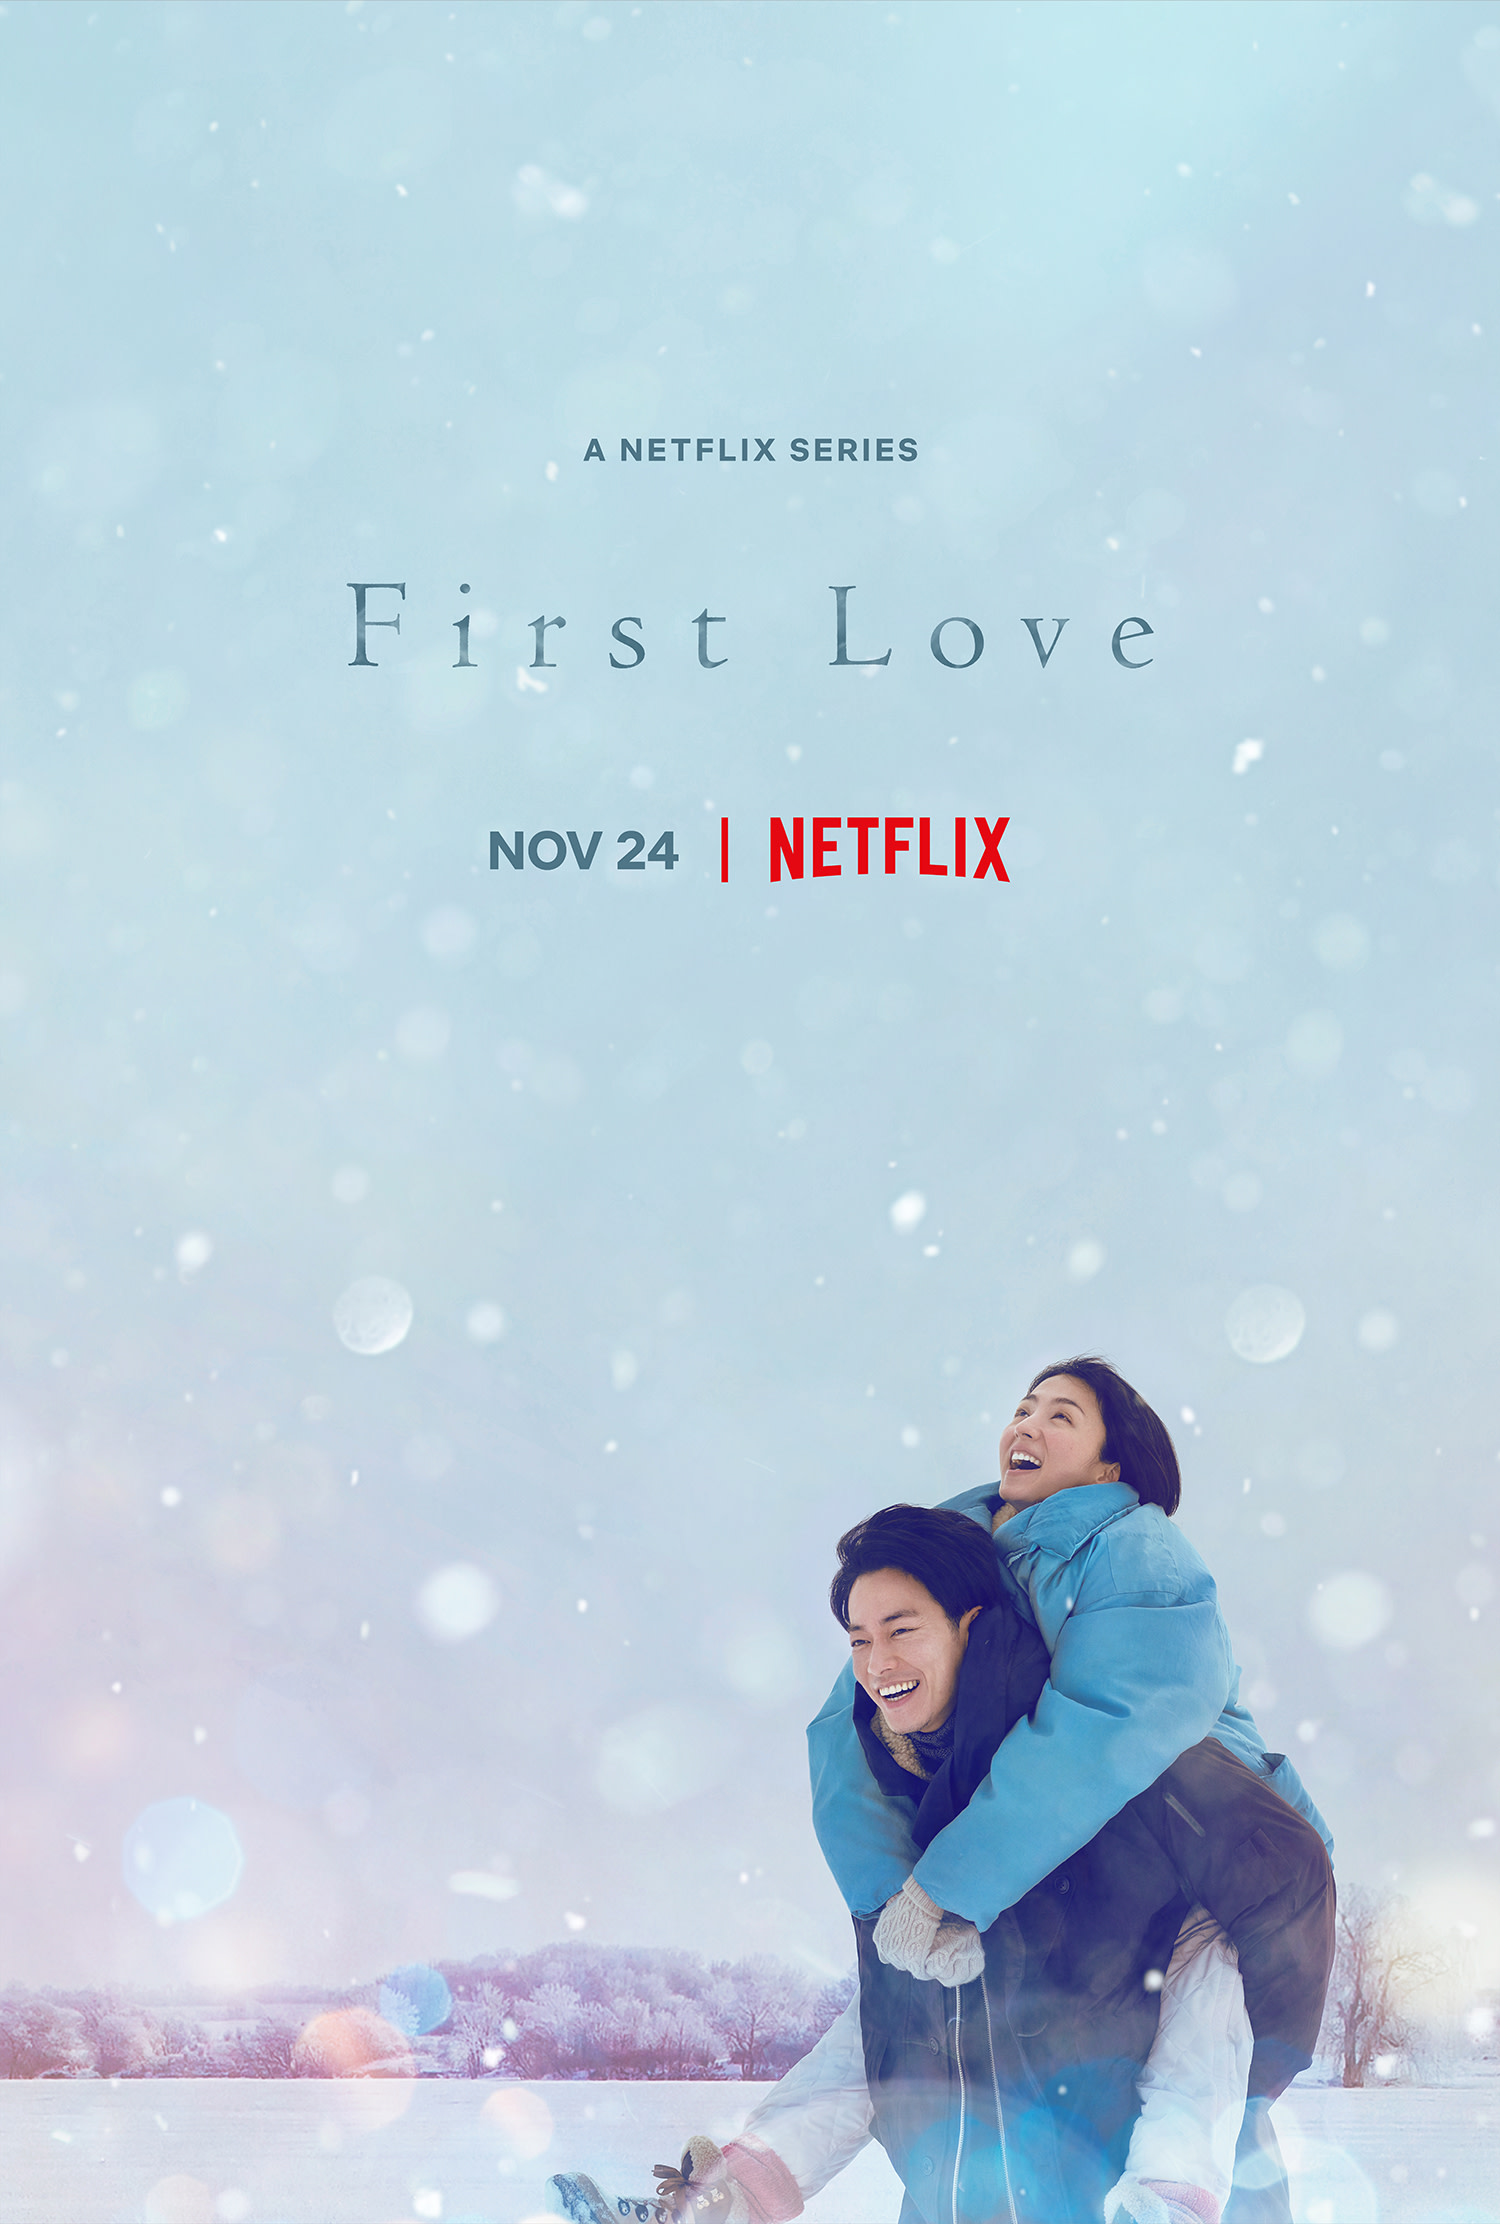 ‘First Love’ Super Teaser Art Debut